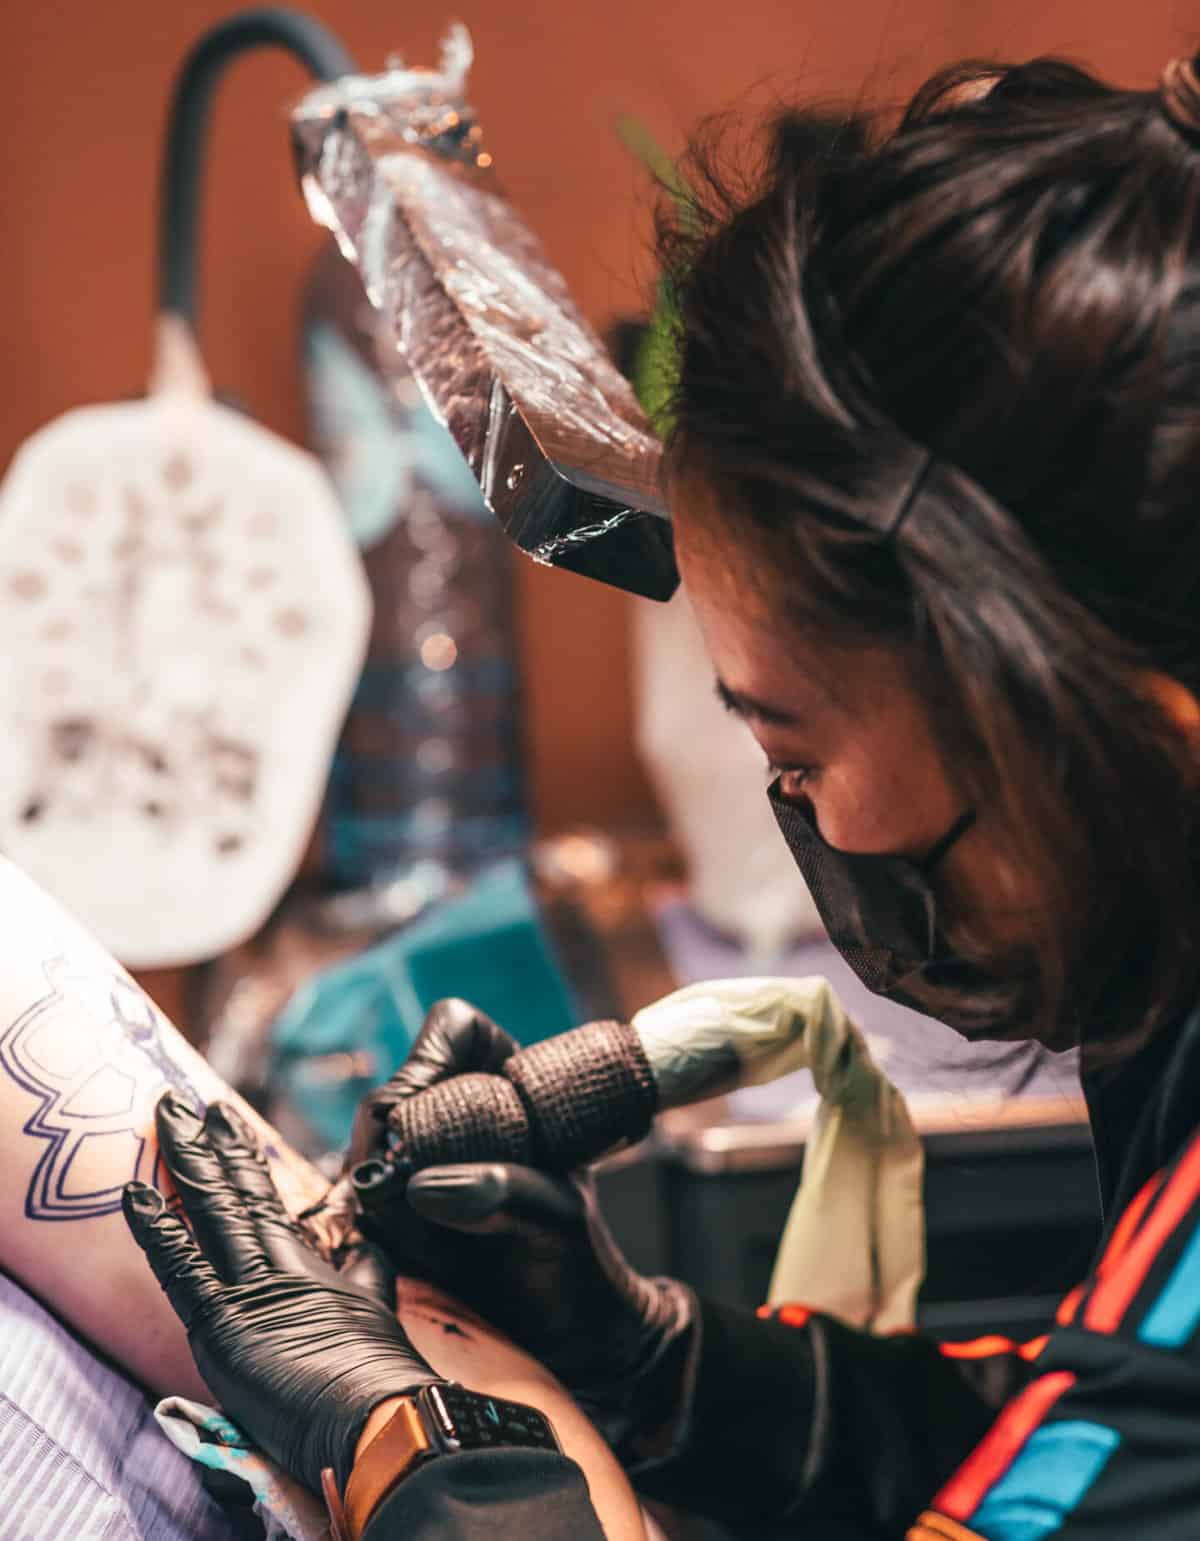 Foto van Sai die een tattoo plaatst op de bovenarm van haar klant.